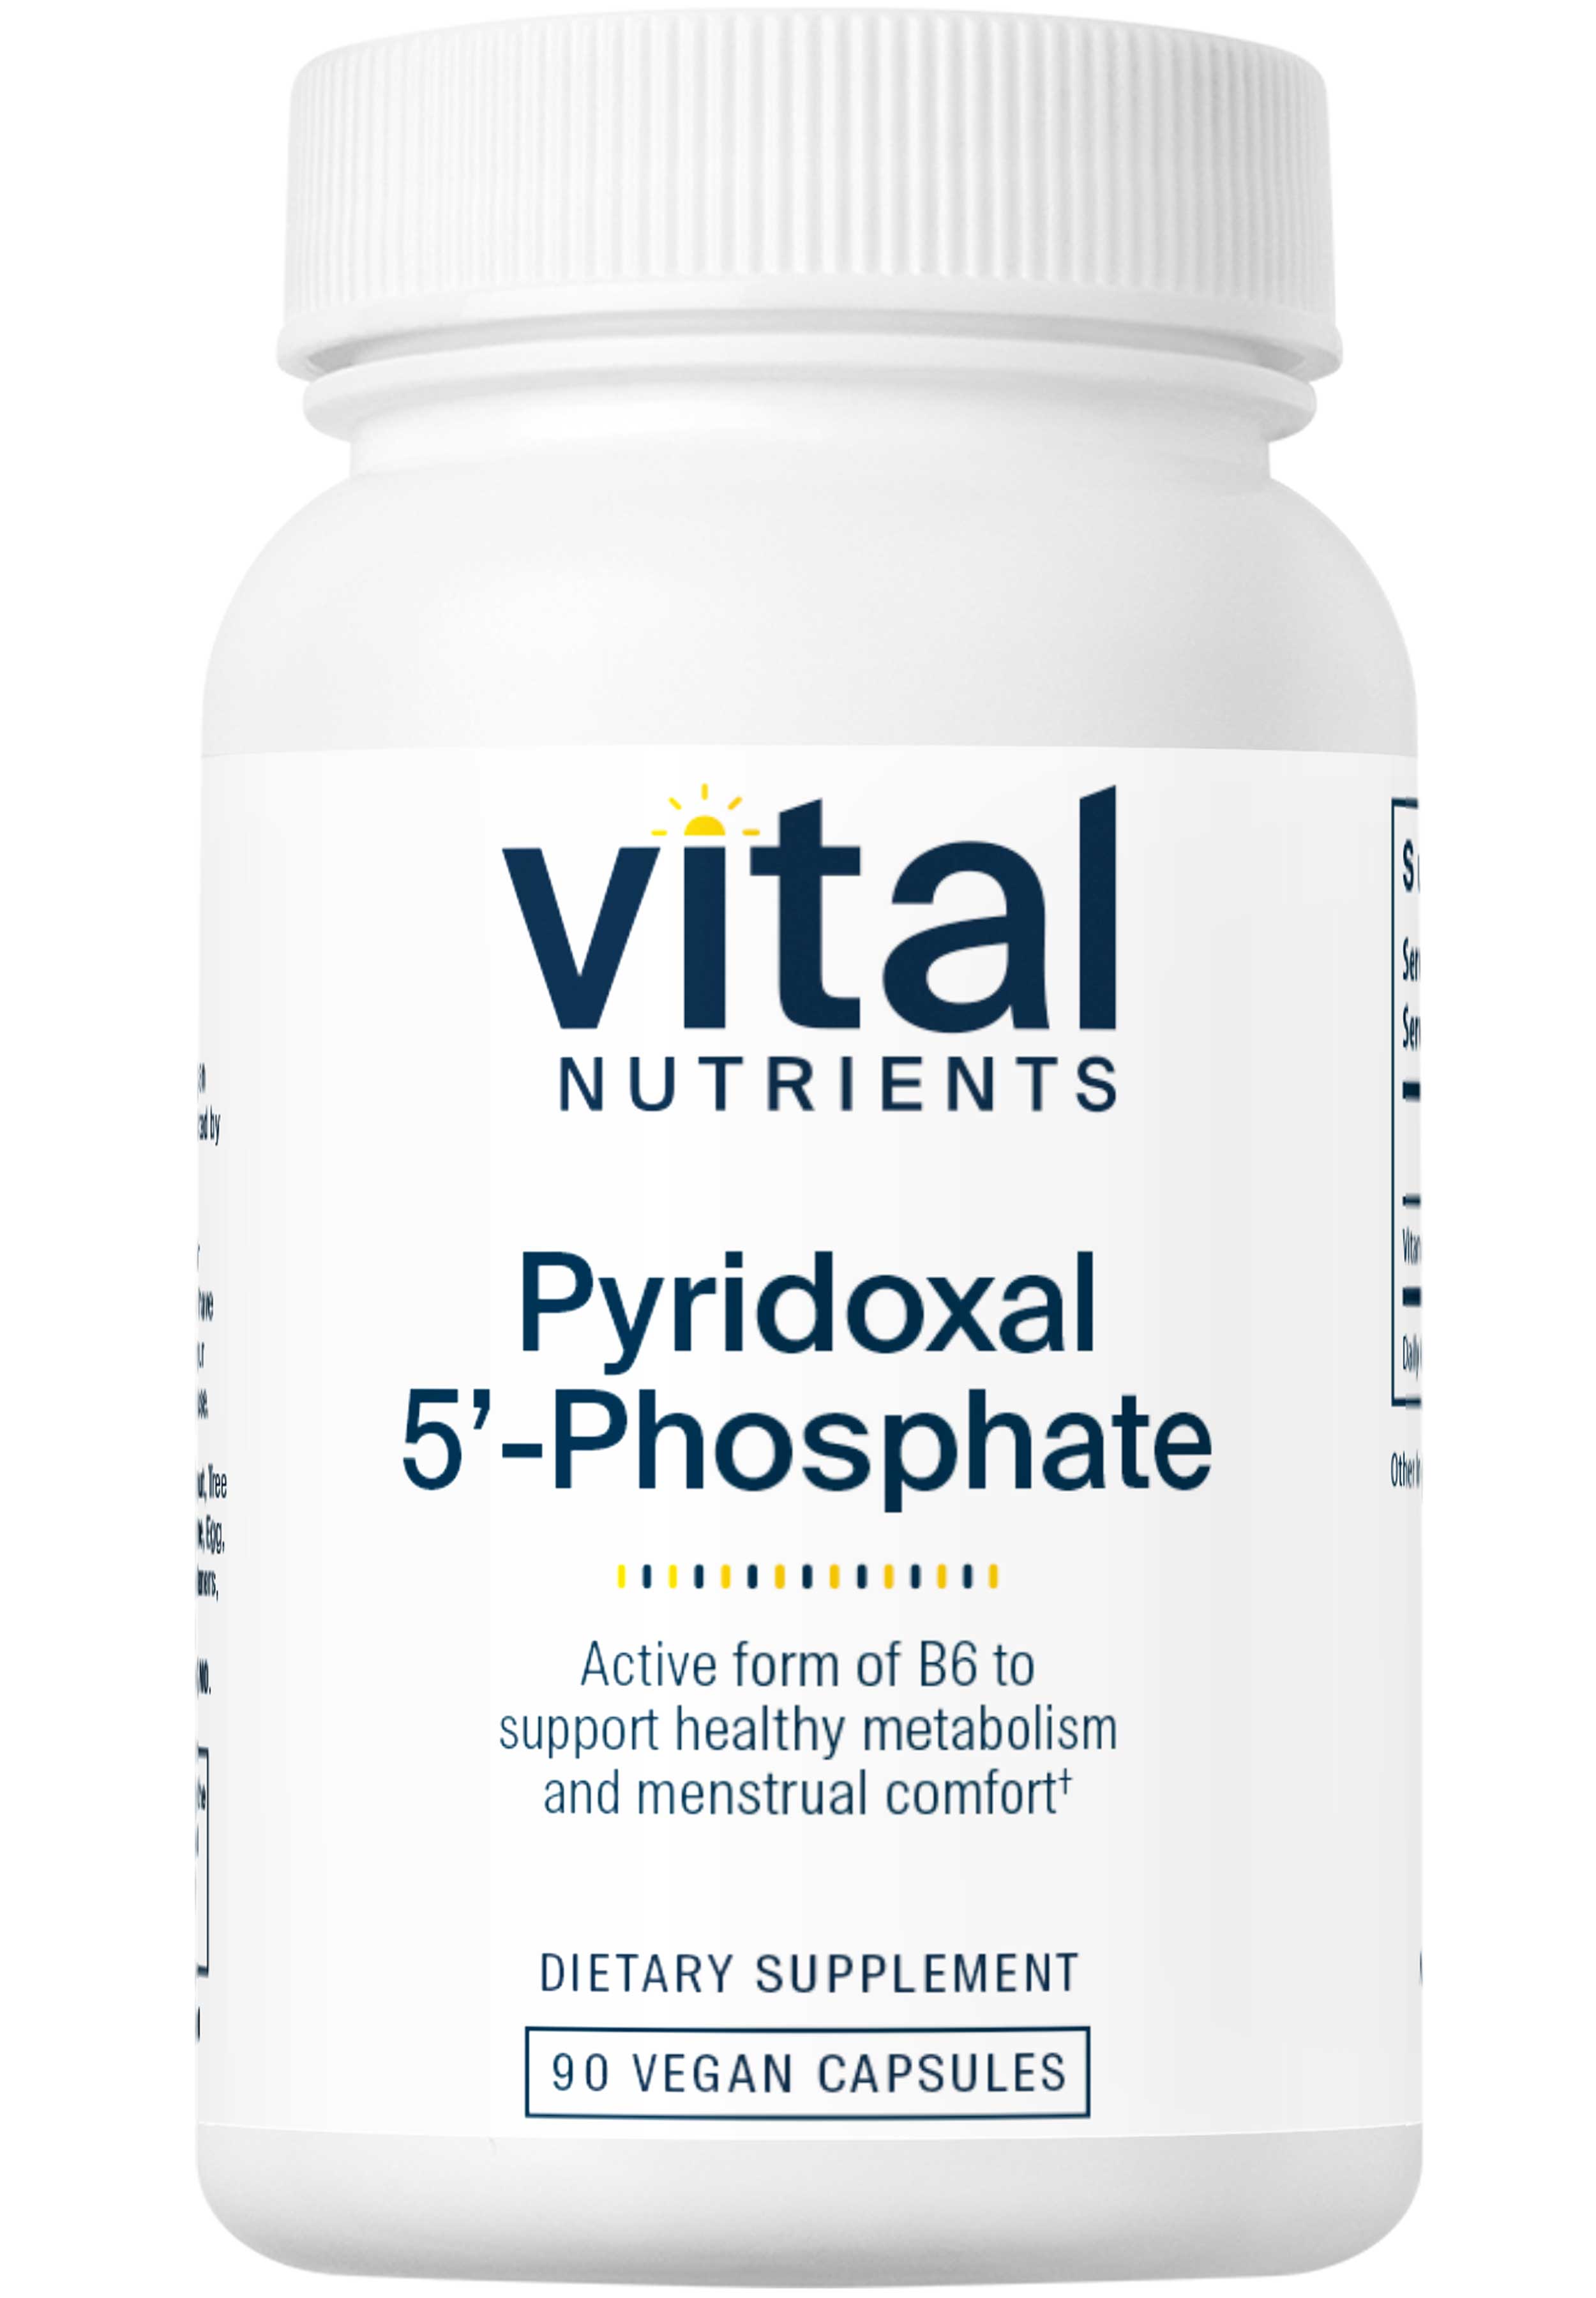 Vital Nutrients Pyridoxal 5' Phosphate